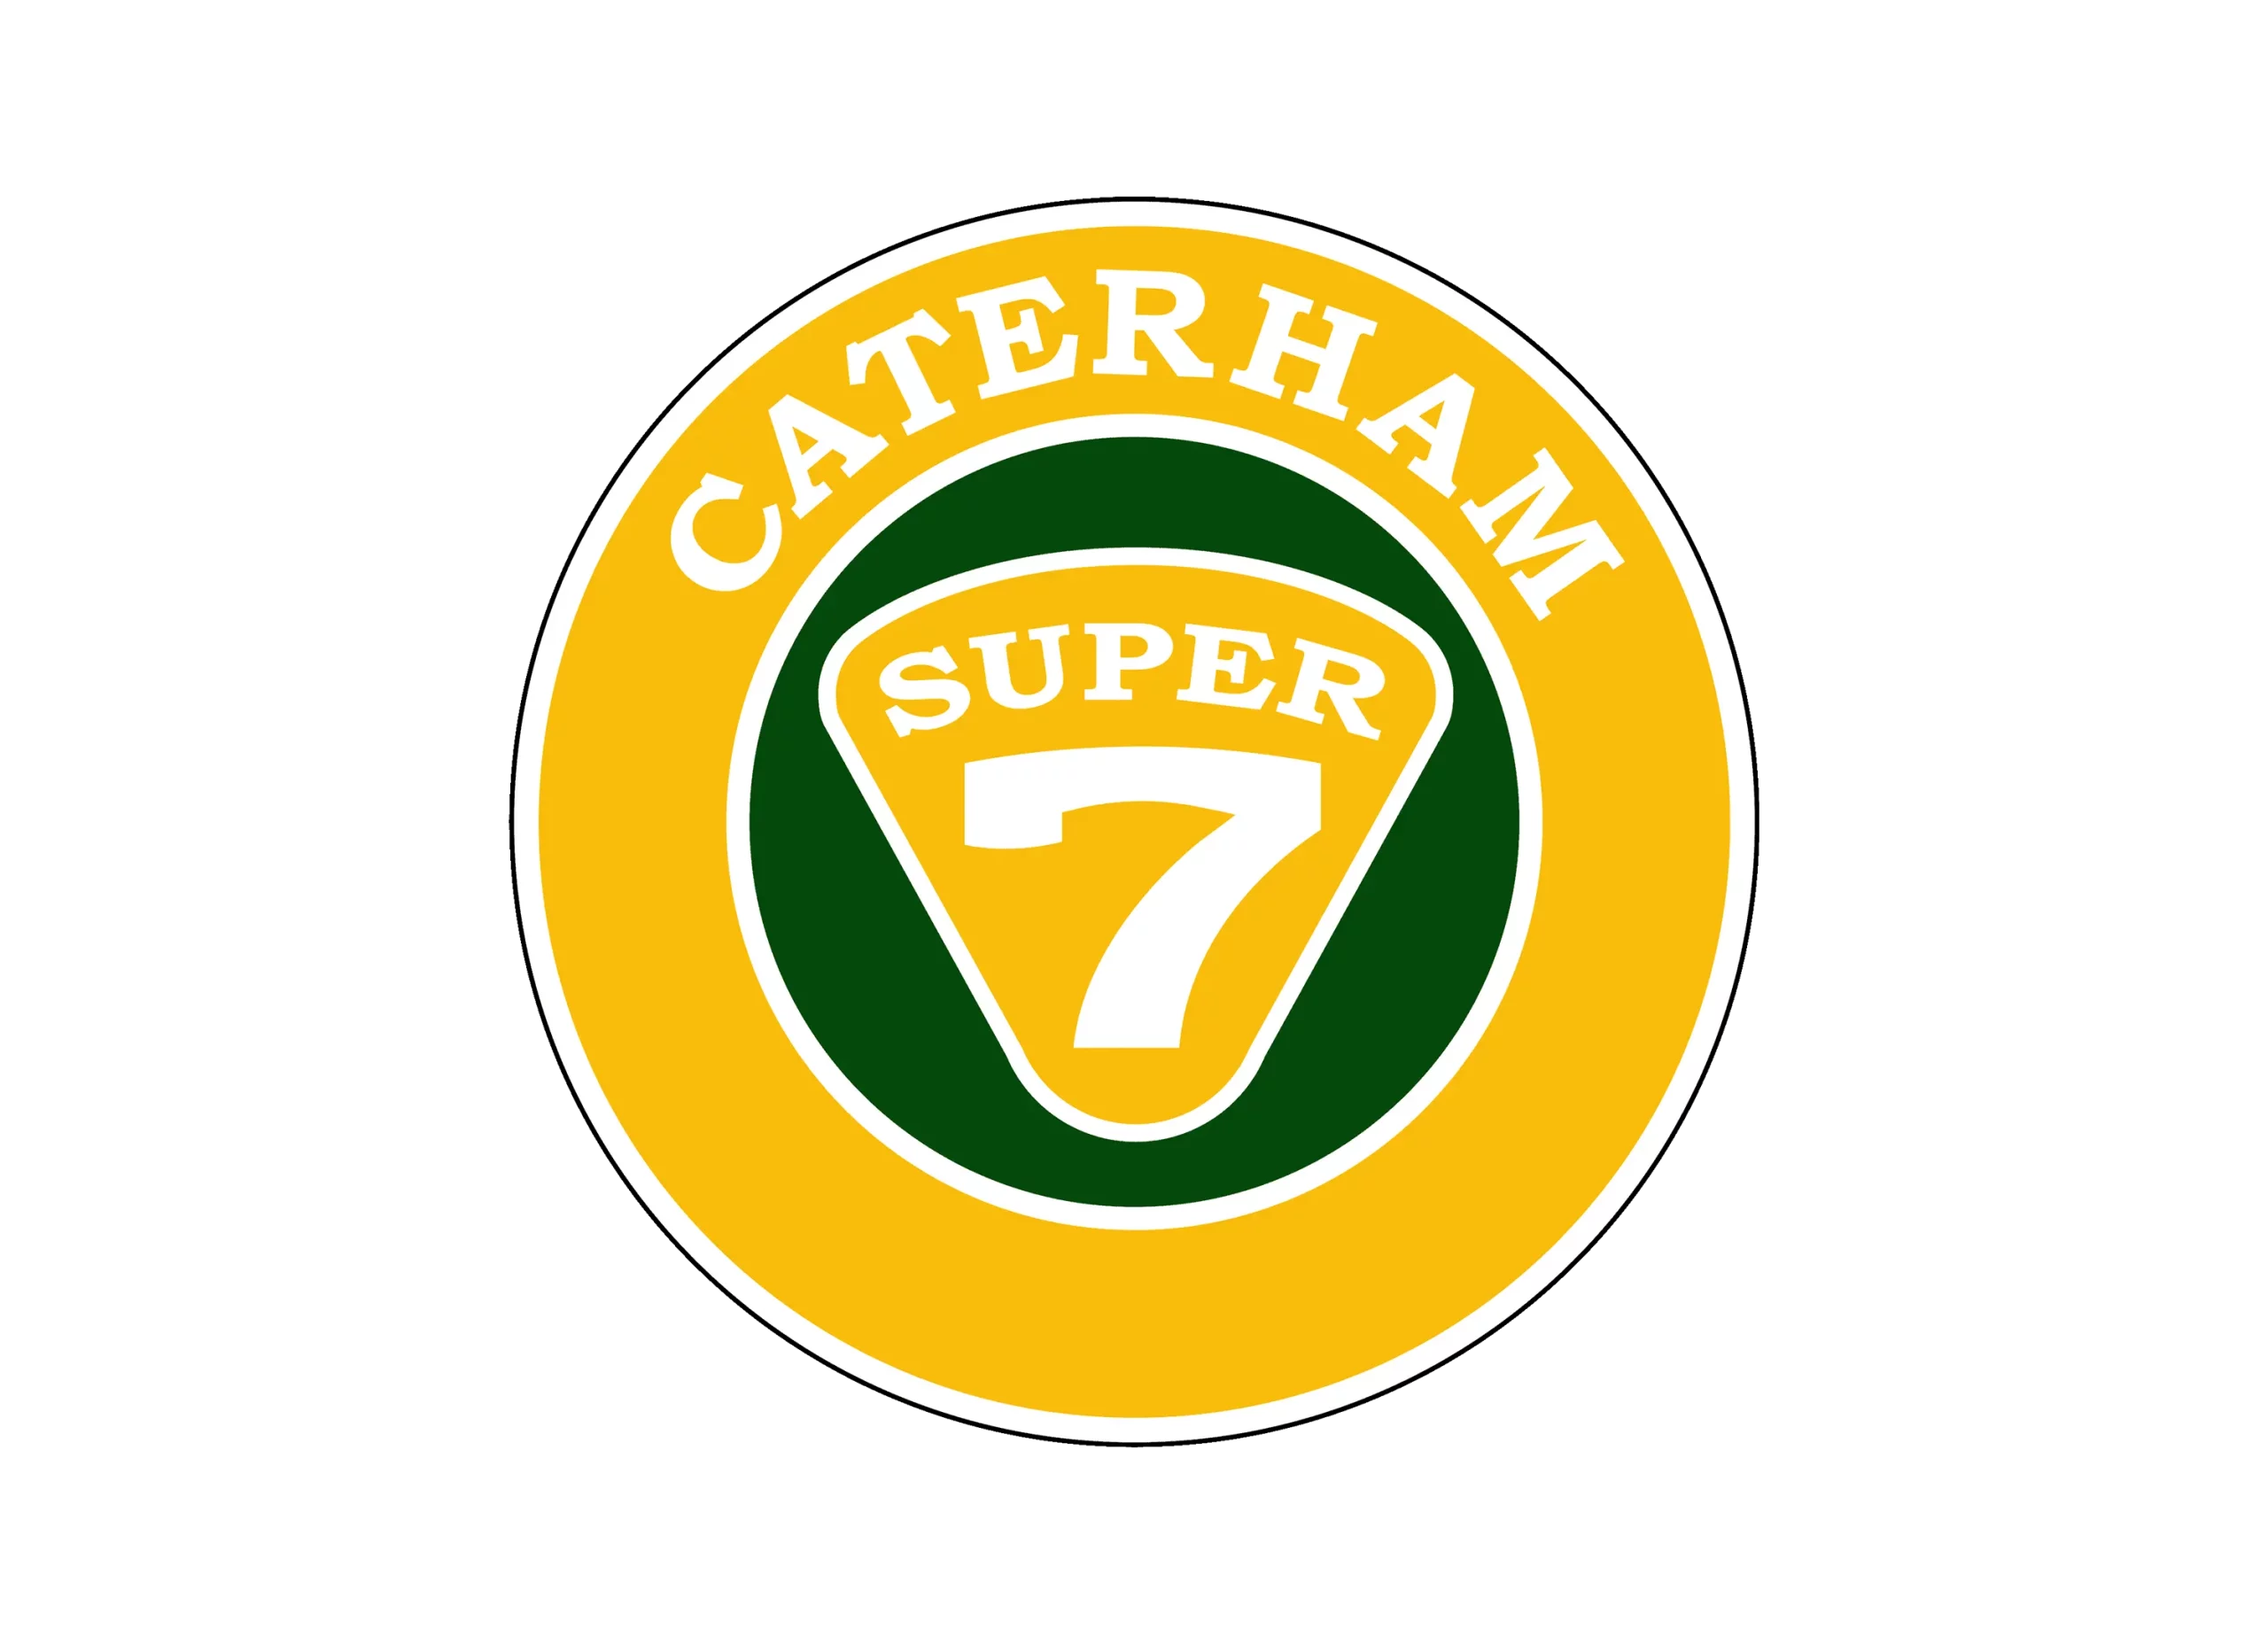 Caterham logo 1973-present